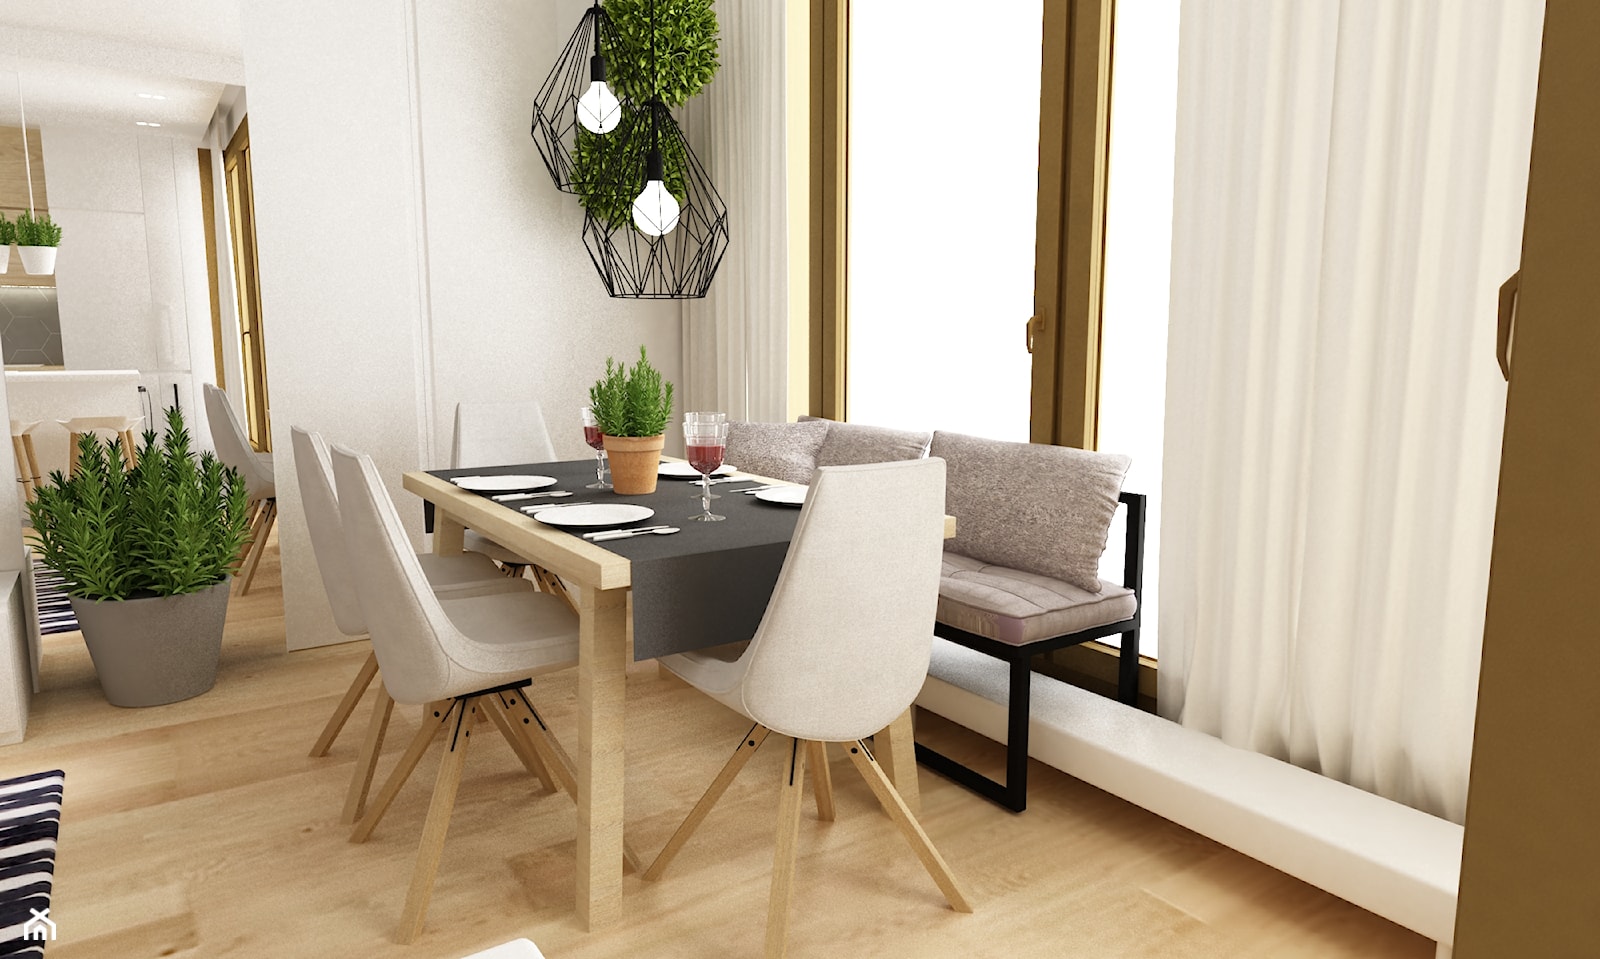 mieszkanie na ochocie 50m2 kolor biel,szarość,dąb - Średnia biała jadalnia jako osobne pomieszczenie, styl skandynawski - zdjęcie od Grafika i Projekt architektura wnętrz - Homebook